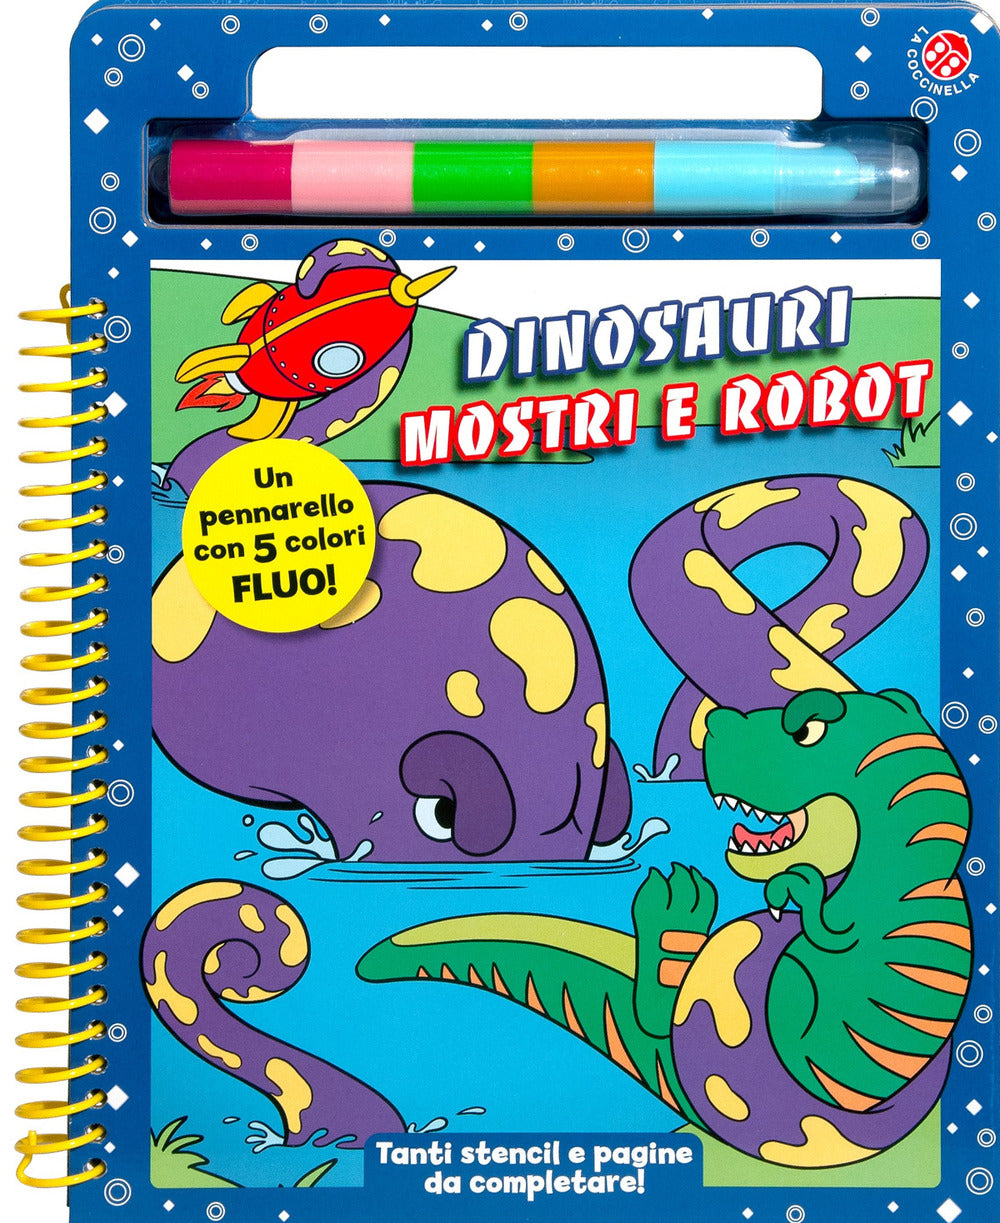 Dinosauri mostri e robot. Ediz. a colori. Con pennarello.